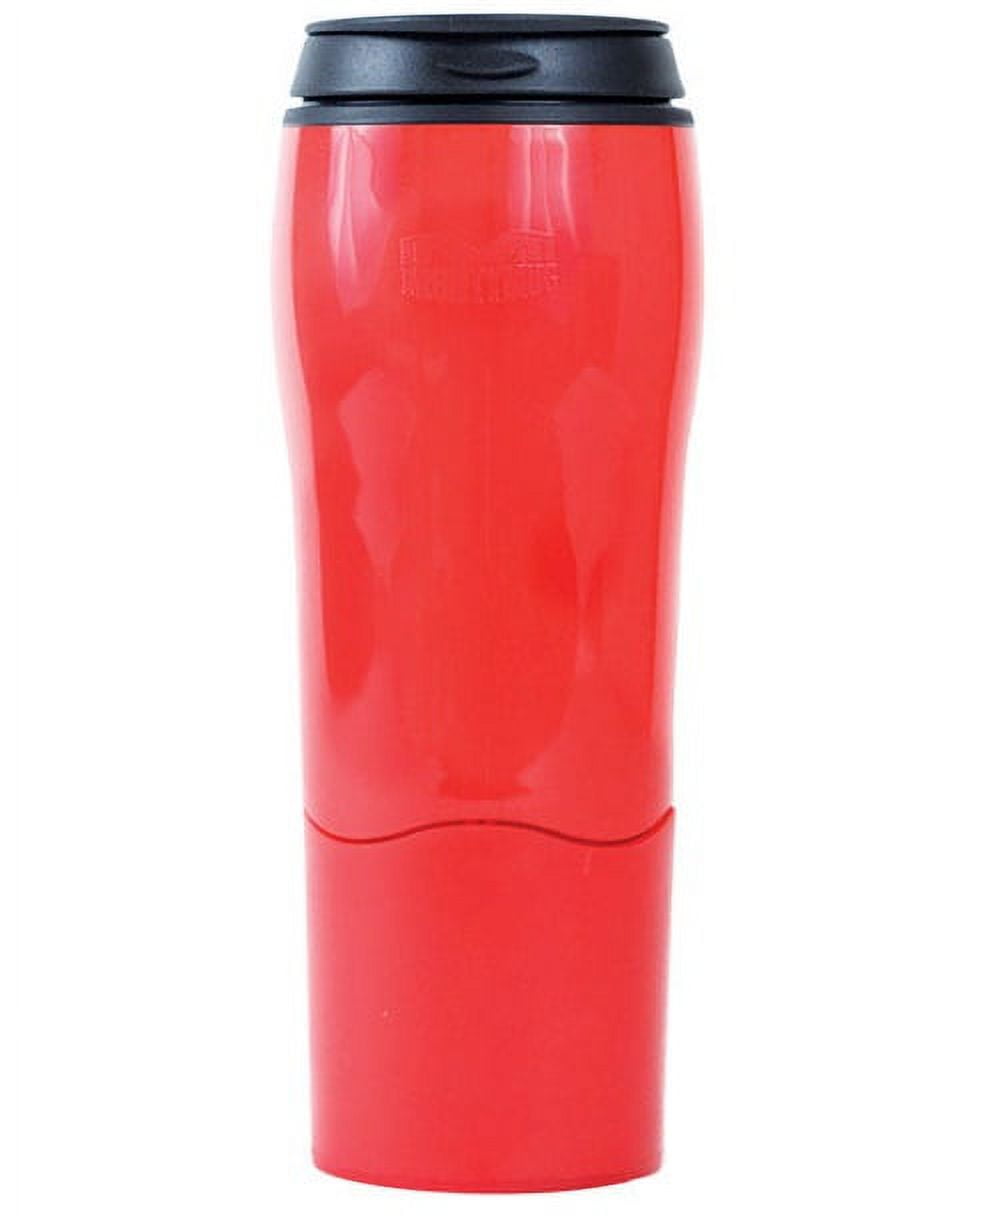 Mighty Mug Red Plastic Travel Mug BPA Free 16 oz.